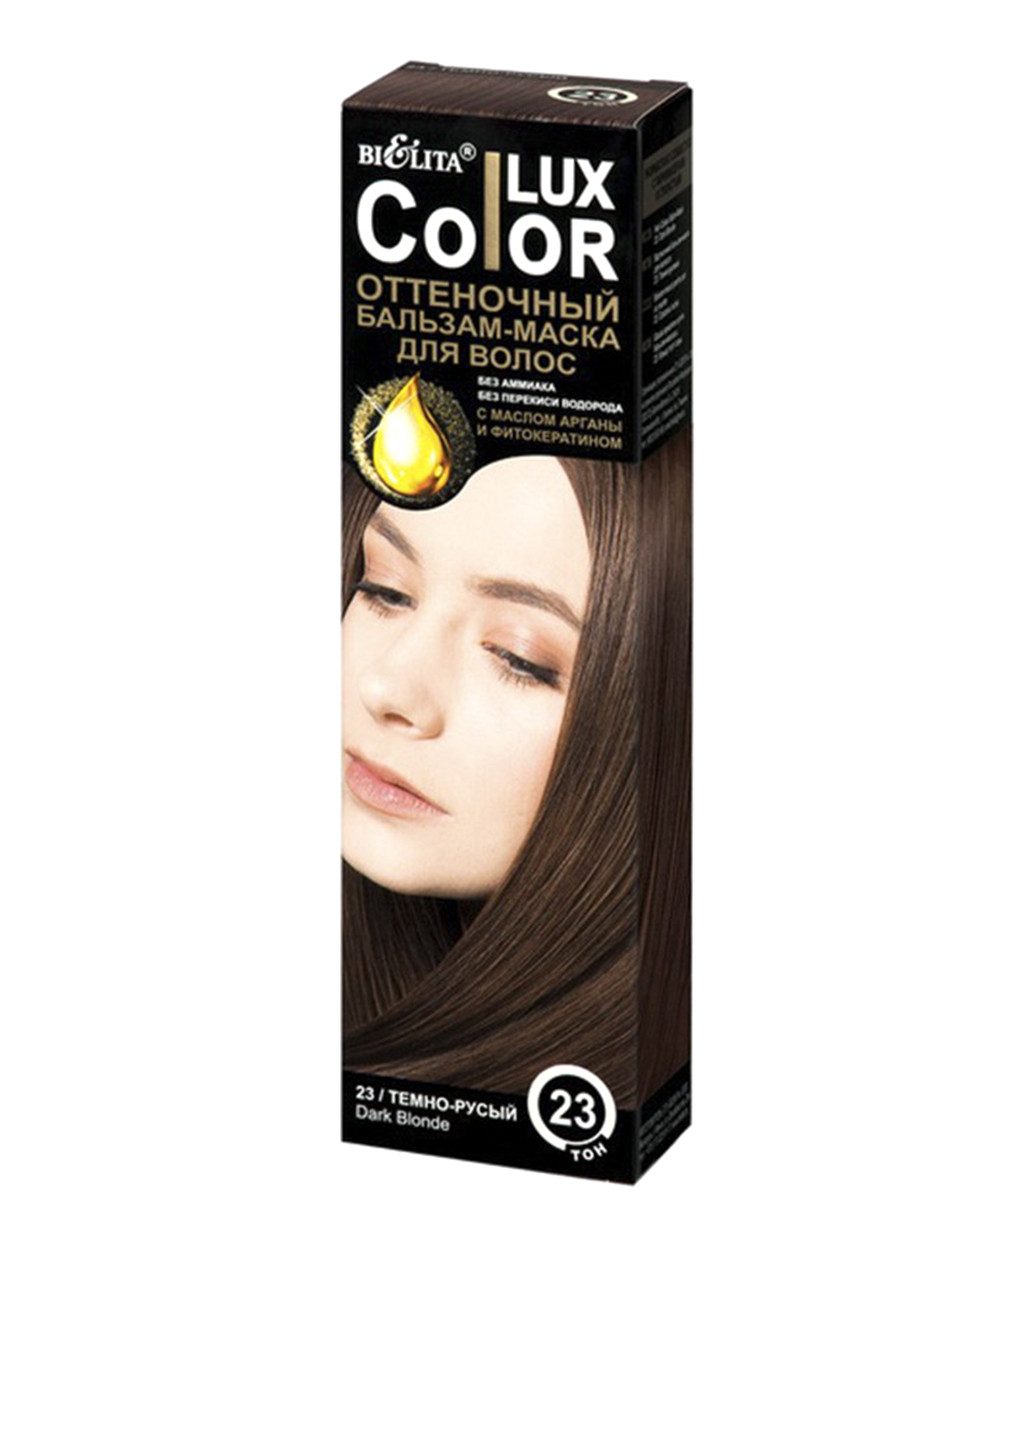 Бальзам оттеночный для волос Color LUX Тон 23 (темно-русый), 100 мл Bielita (75295203)